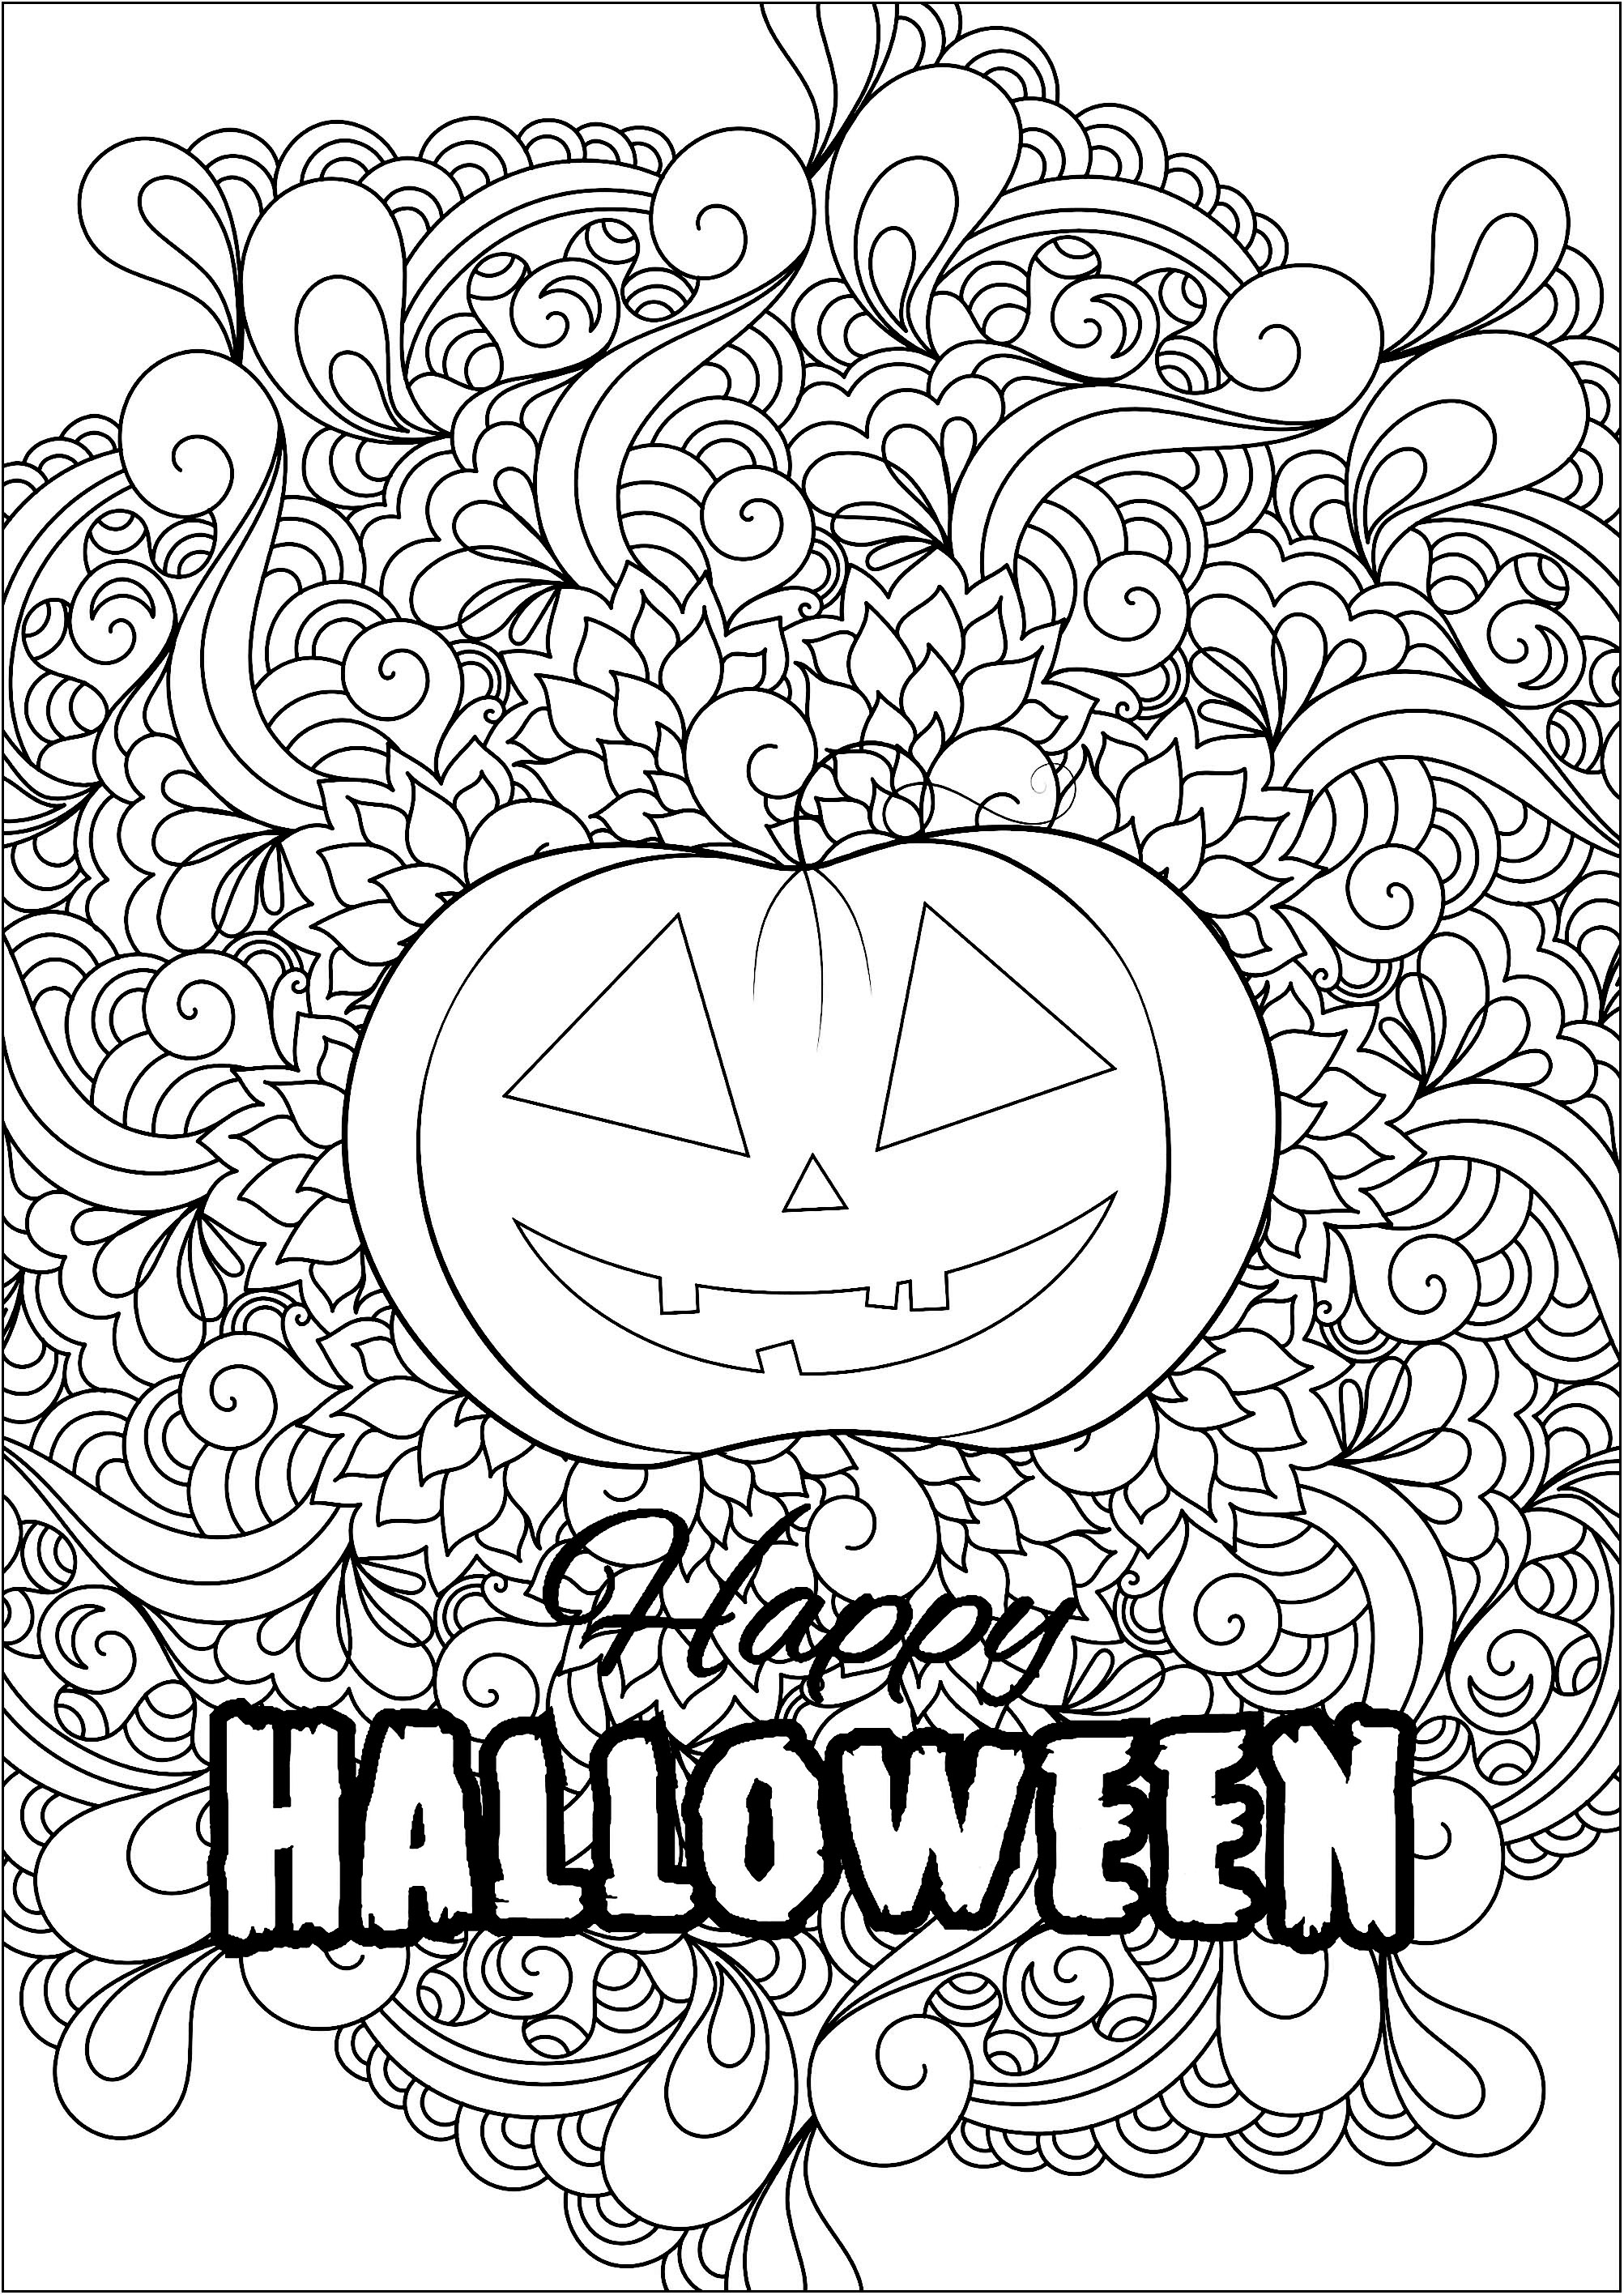 Jolie citrouille d'Halloween avec motifs et texte. Coloriez cette jolie citrouille d'Halloween avec arrière-plan composé de motifs et texte 'Happy Halloween'